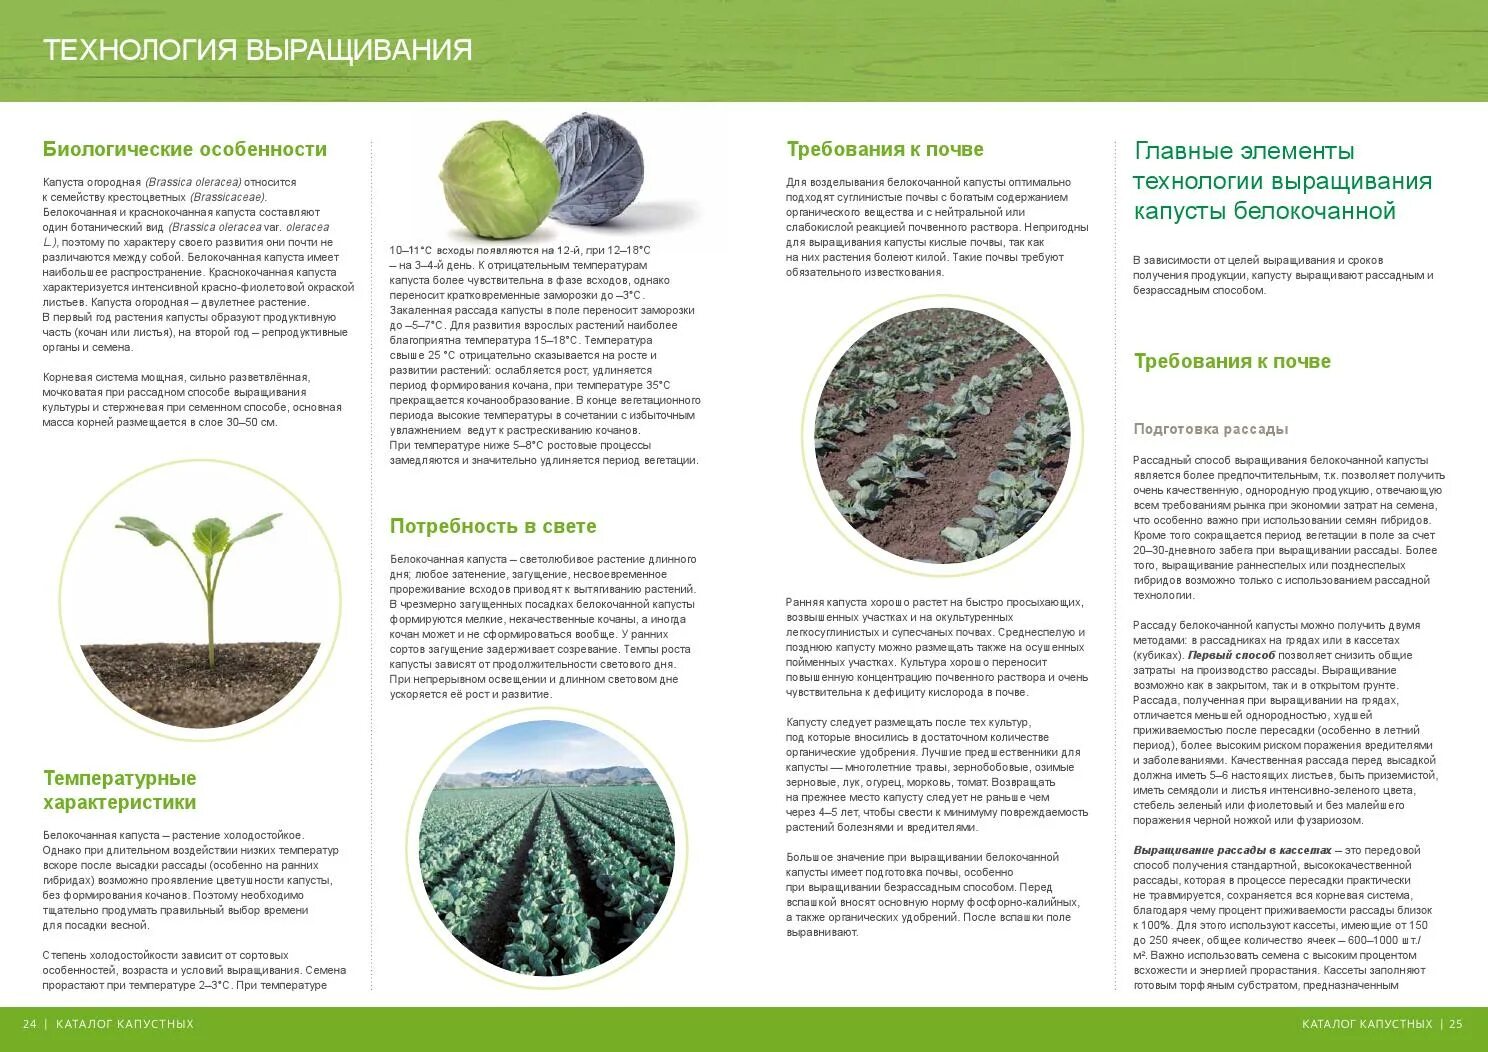 Технология выращивания белокочанной капусты кратко. Возделывание белокочанной капусты технология возделывания. Технология возделывания капусты белокочанной кратко. Технология выращивания рассады капусты.